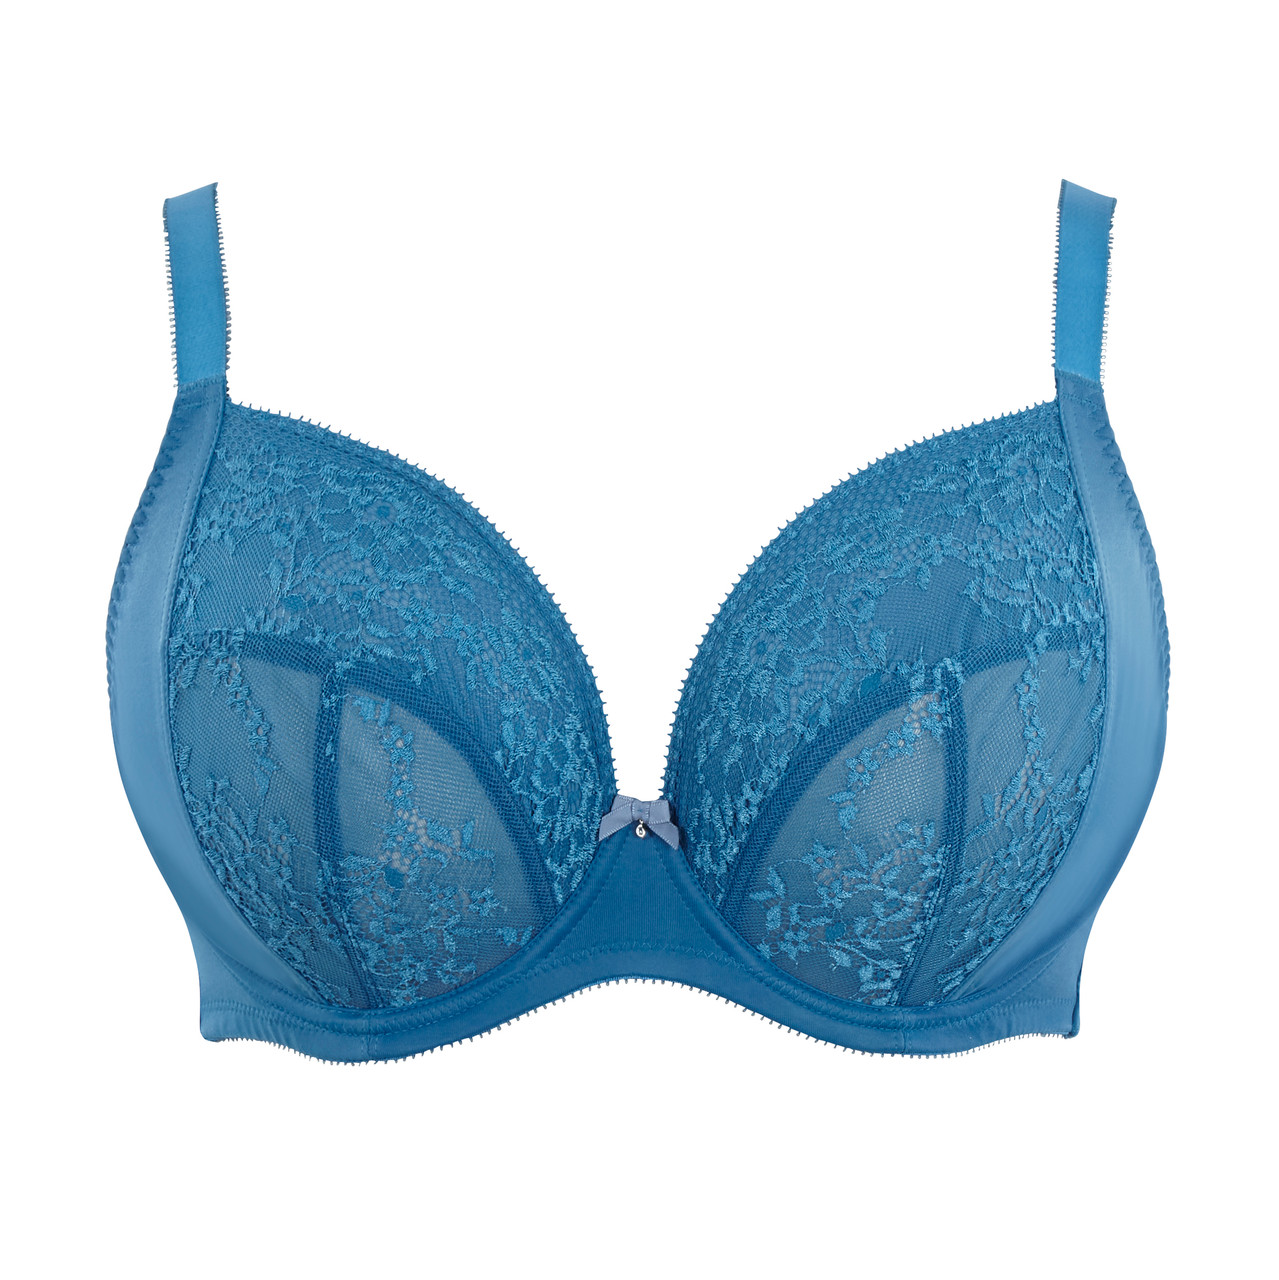 Freya Soiree Fuller Bust lace plunge longline bra in blue